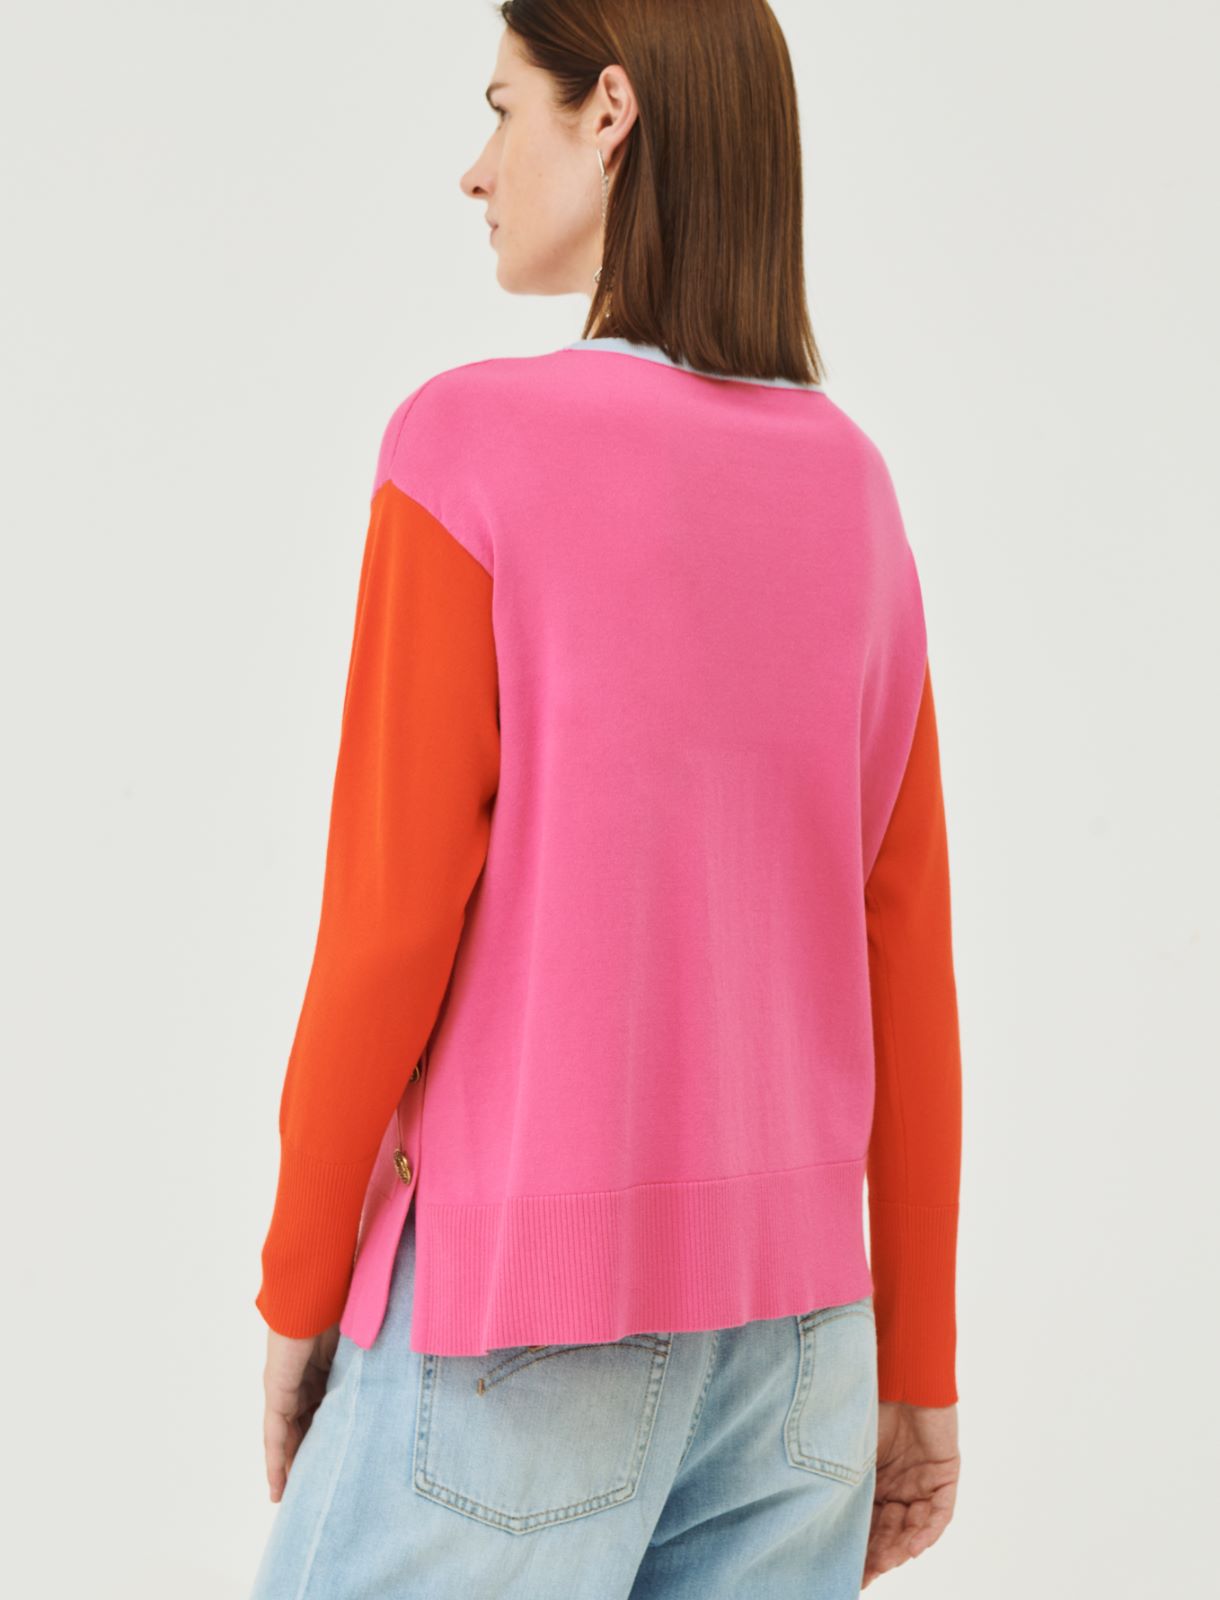 Stockinette-stitched sweater - Shocking pink - Marina Rinaldi - 2